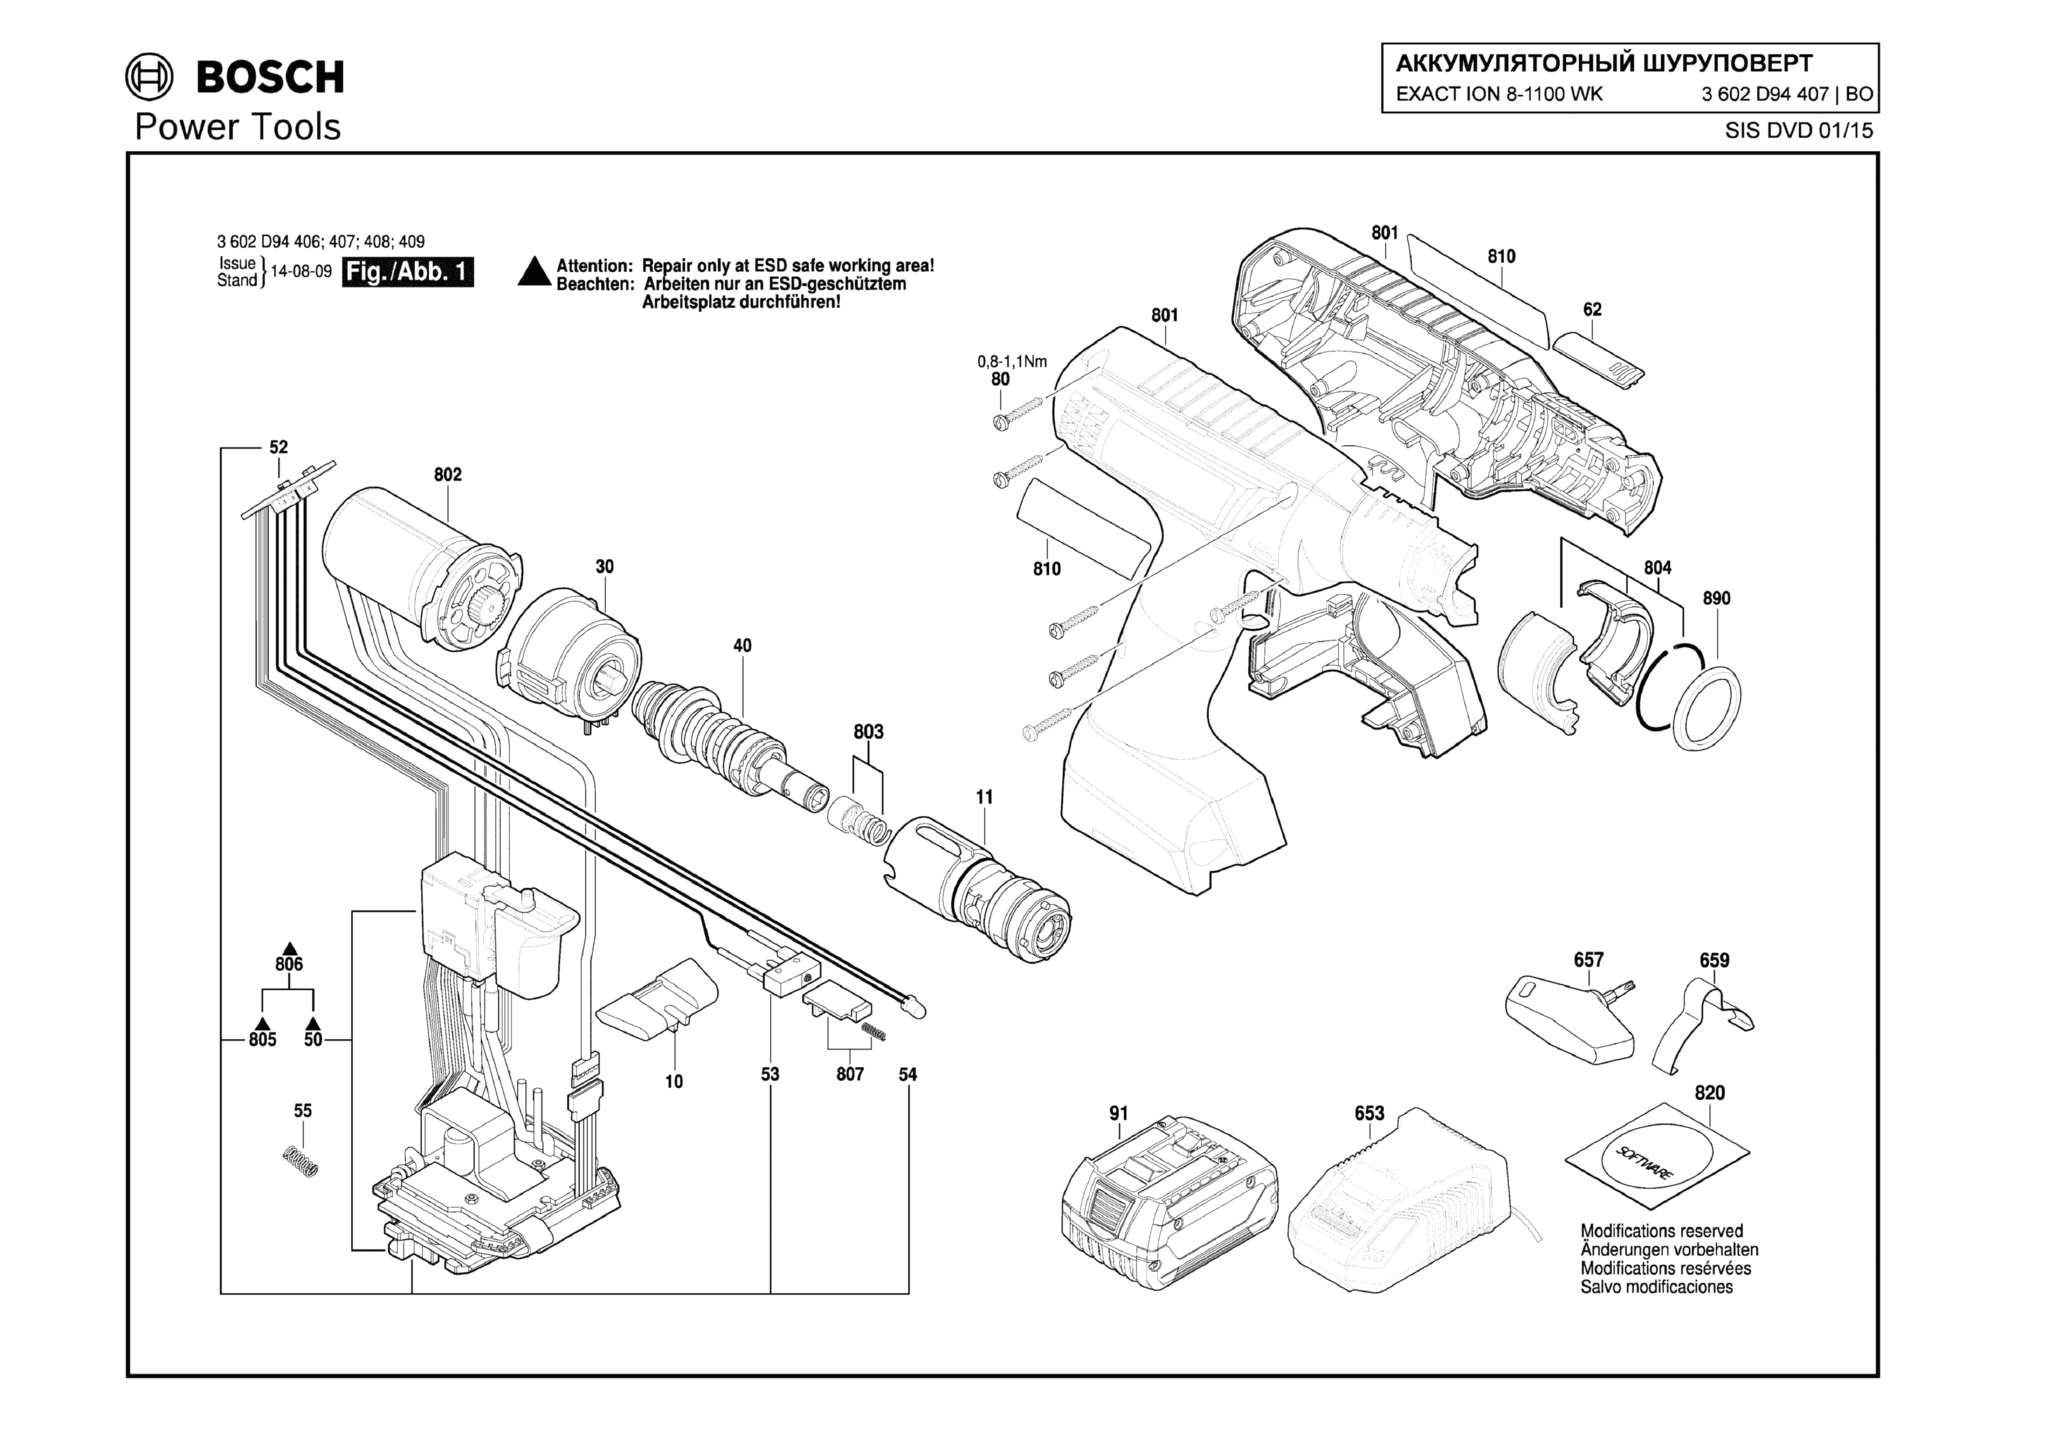 Запчасти, схема и деталировка Bosch EXACT ION 8-1100 WK (ТИП 3602D94407)